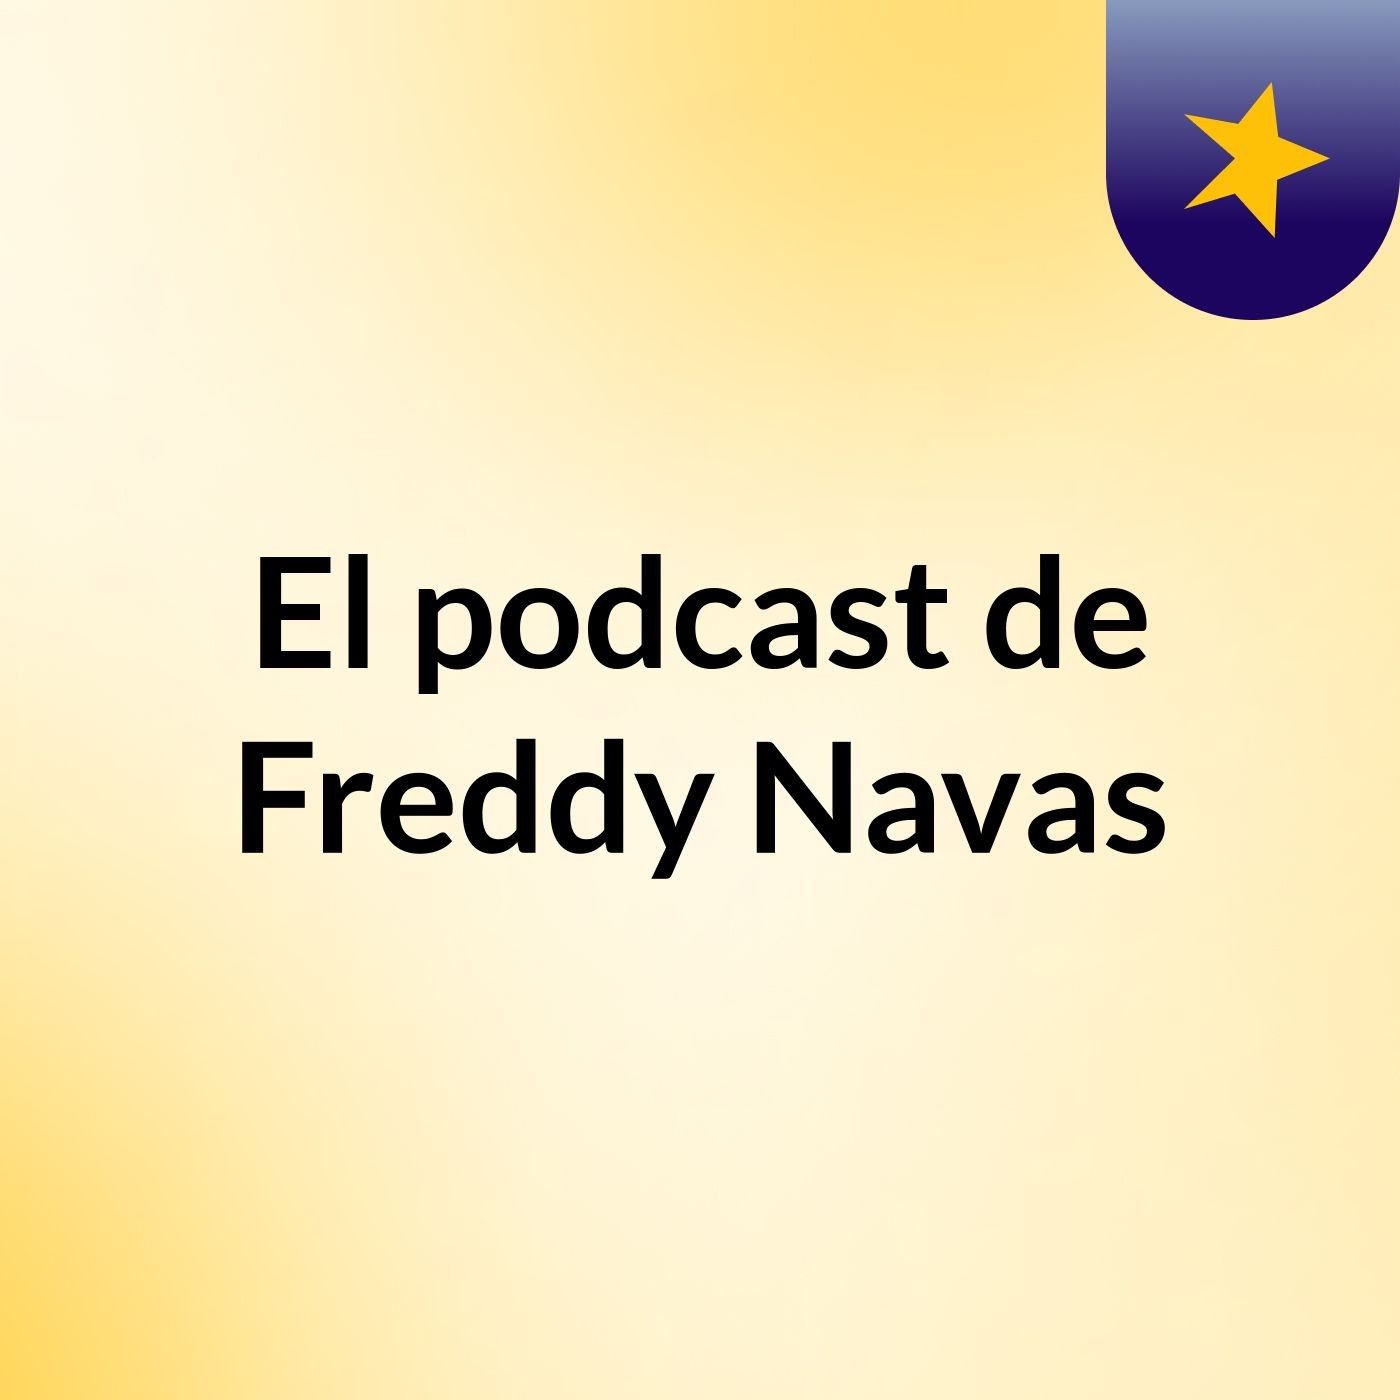 El podcast de Freddy Navas